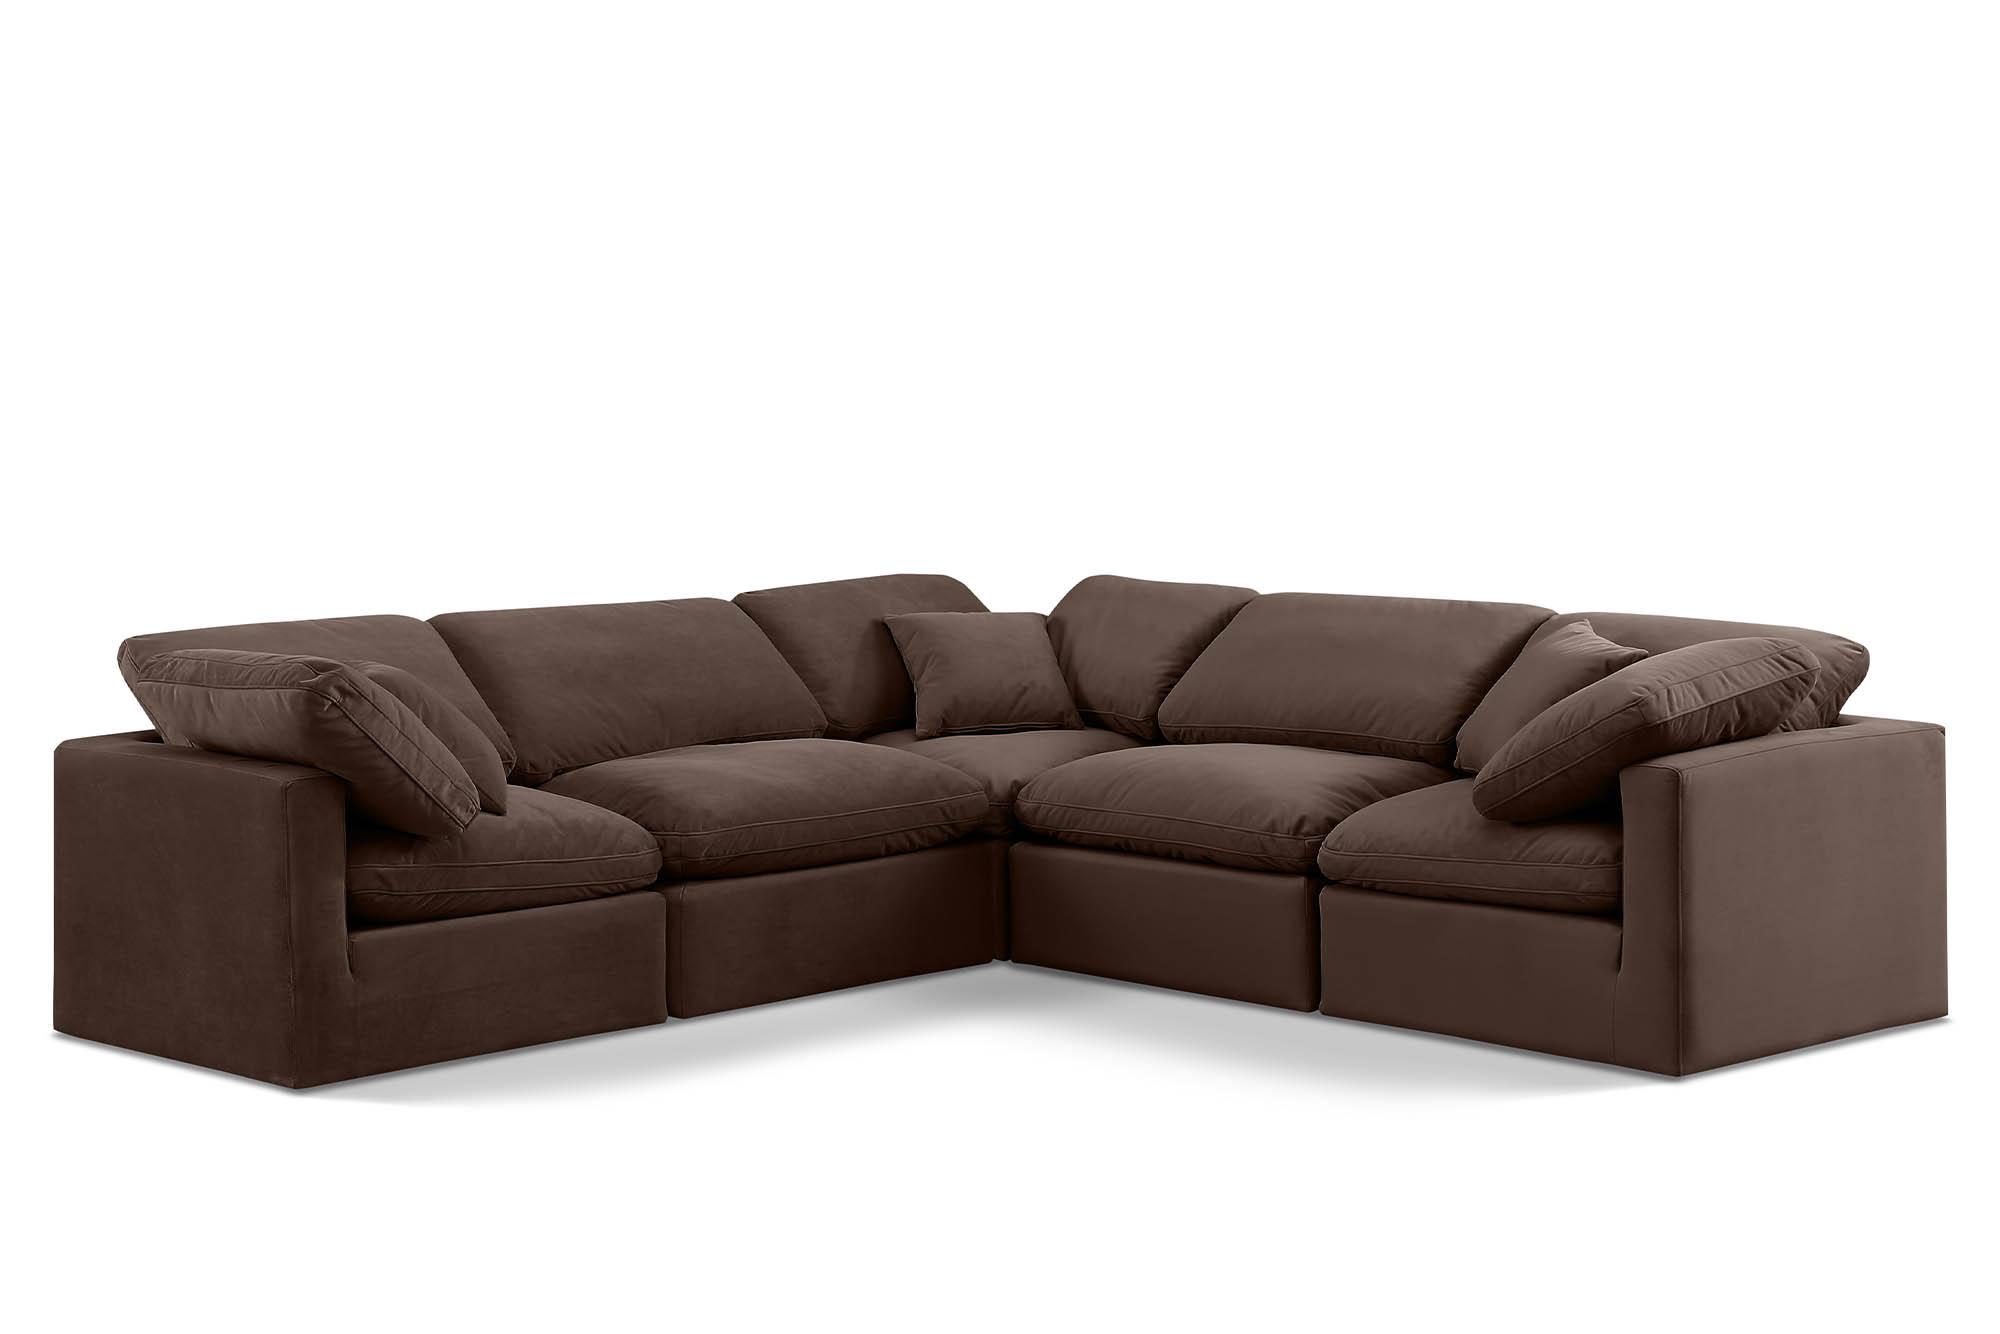 Contemporary, Modern Modular Sectional Sofa INDULGE 147Brown-Sec5C 147Brown-Sec5C in Brown Velvet